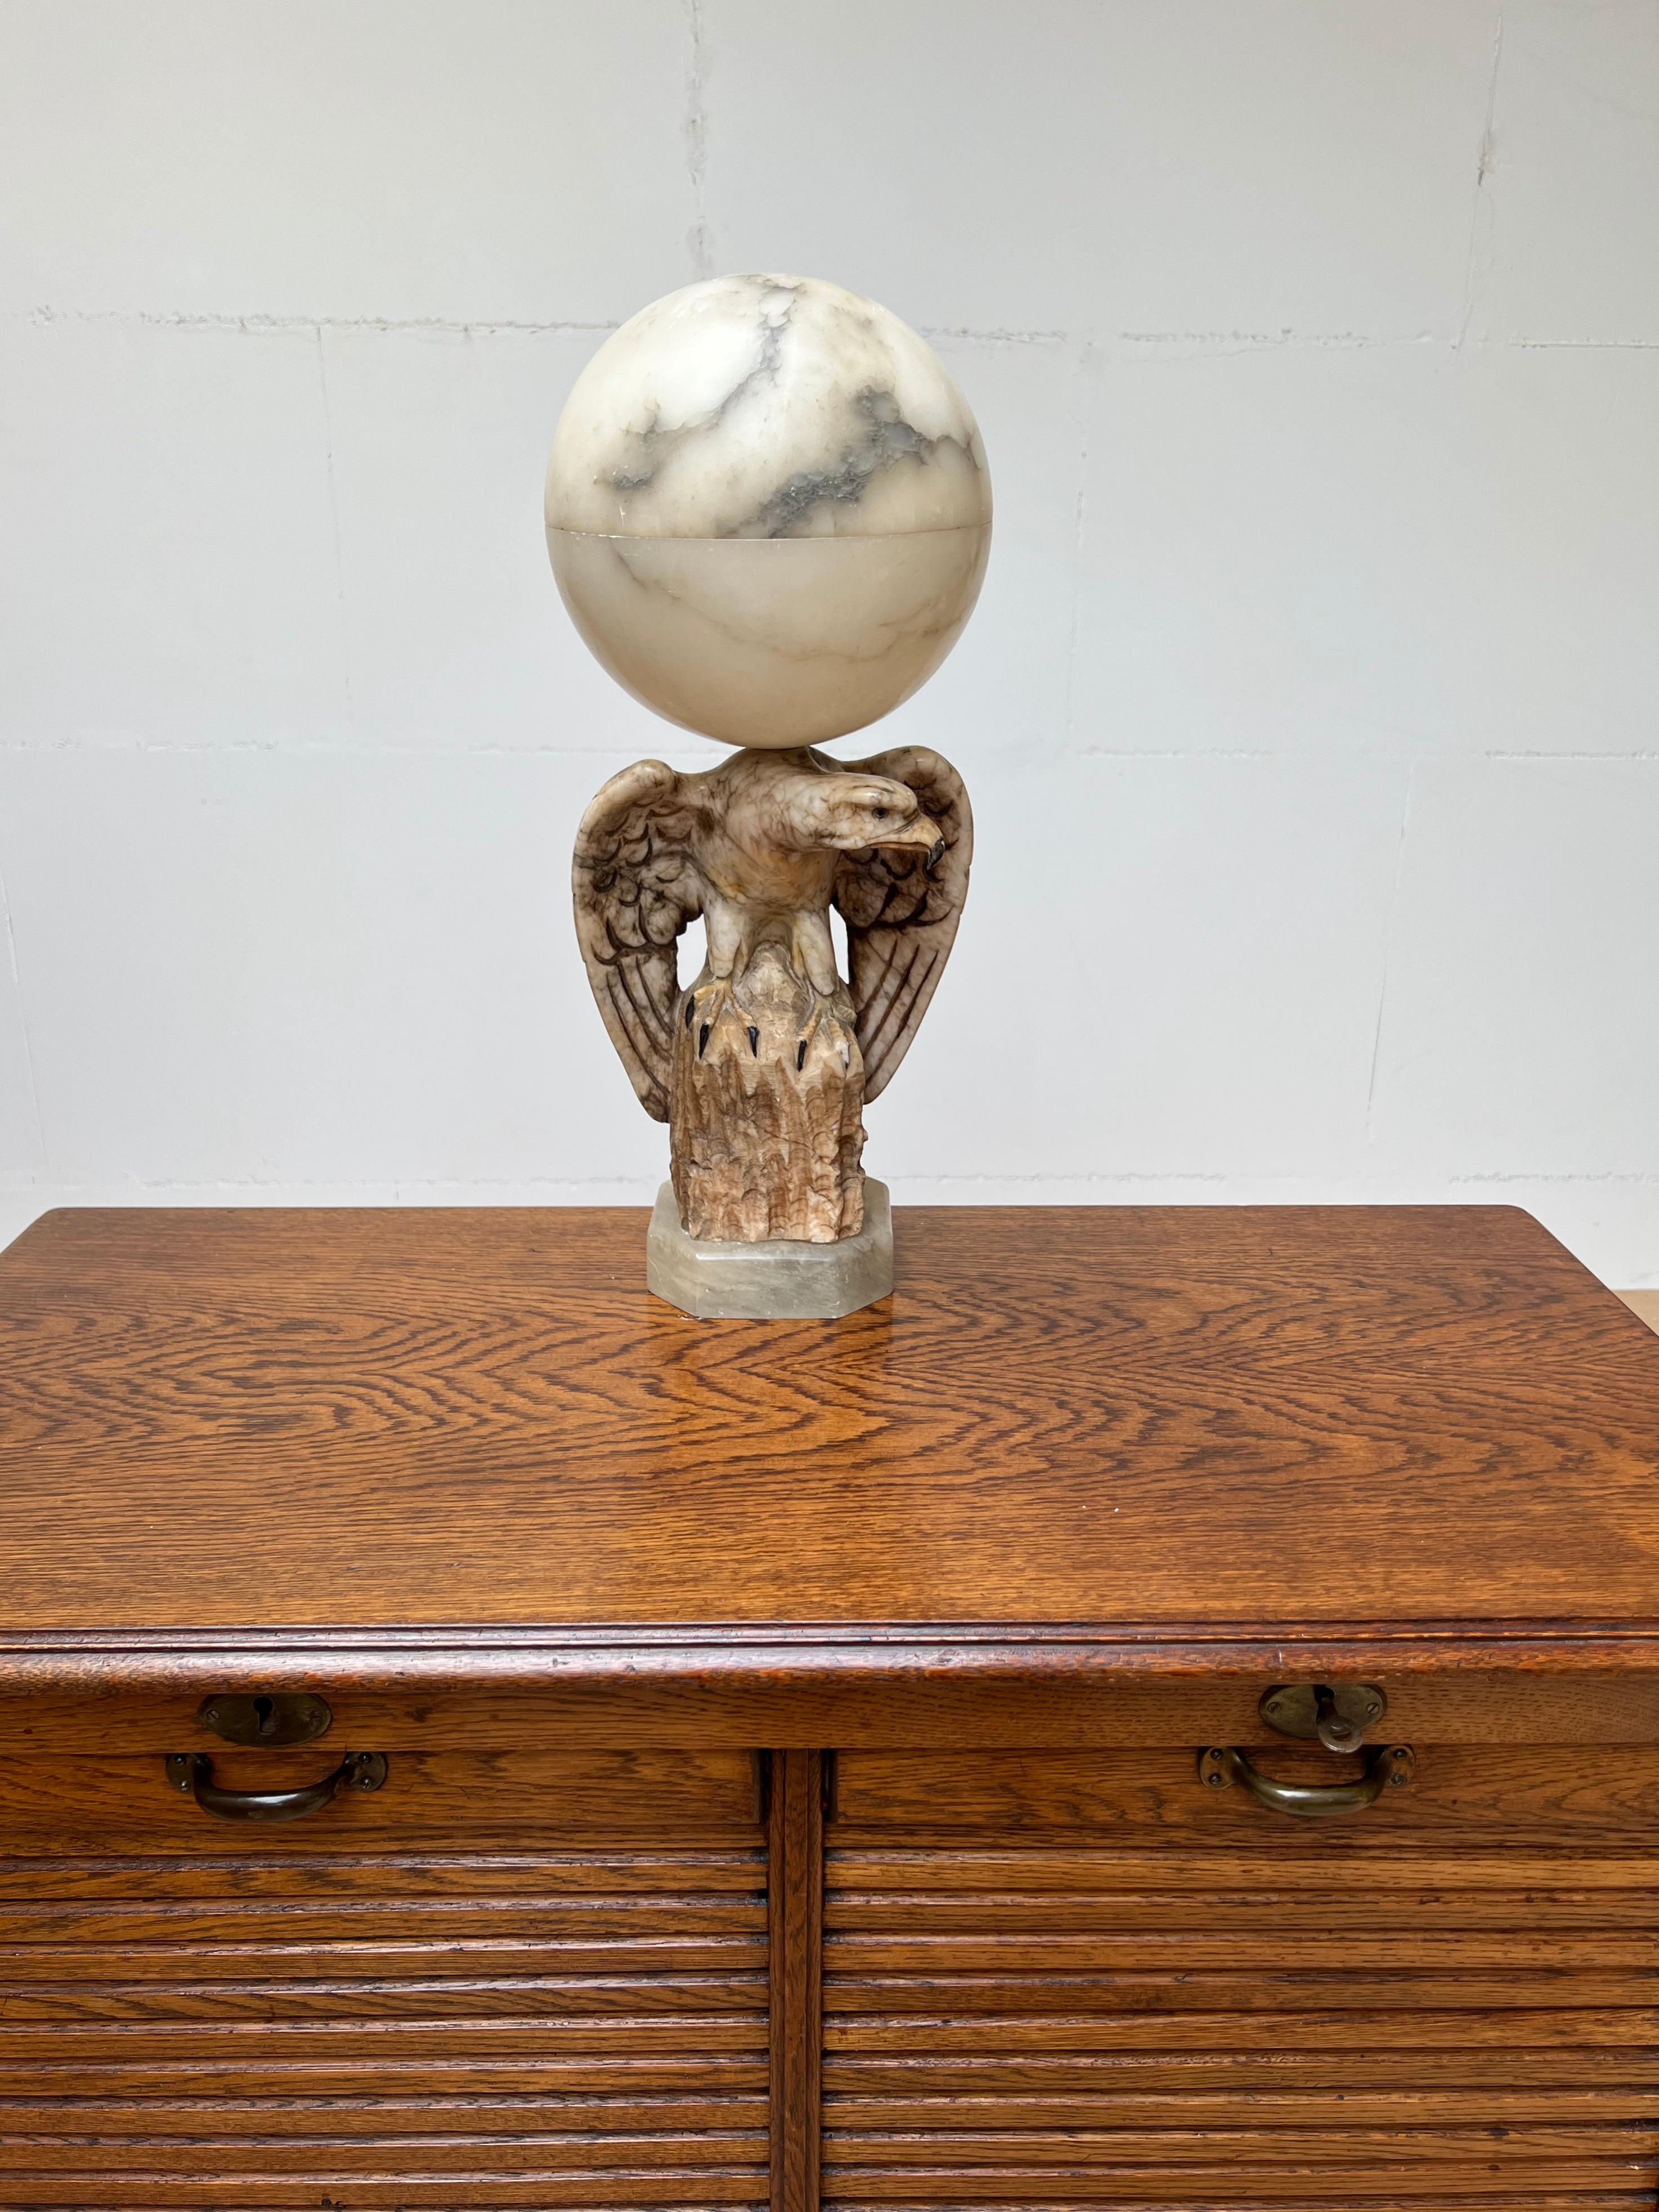 Lampe de table en forme d'aigle ailé, très décorative et de qualité, sculptée.

Entièrement fabriquée à la main à partir de matériaux naturels, cette lampe de table en forme d'aigle rare est une merveilleuse œuvre d'art le jour et un luminaire